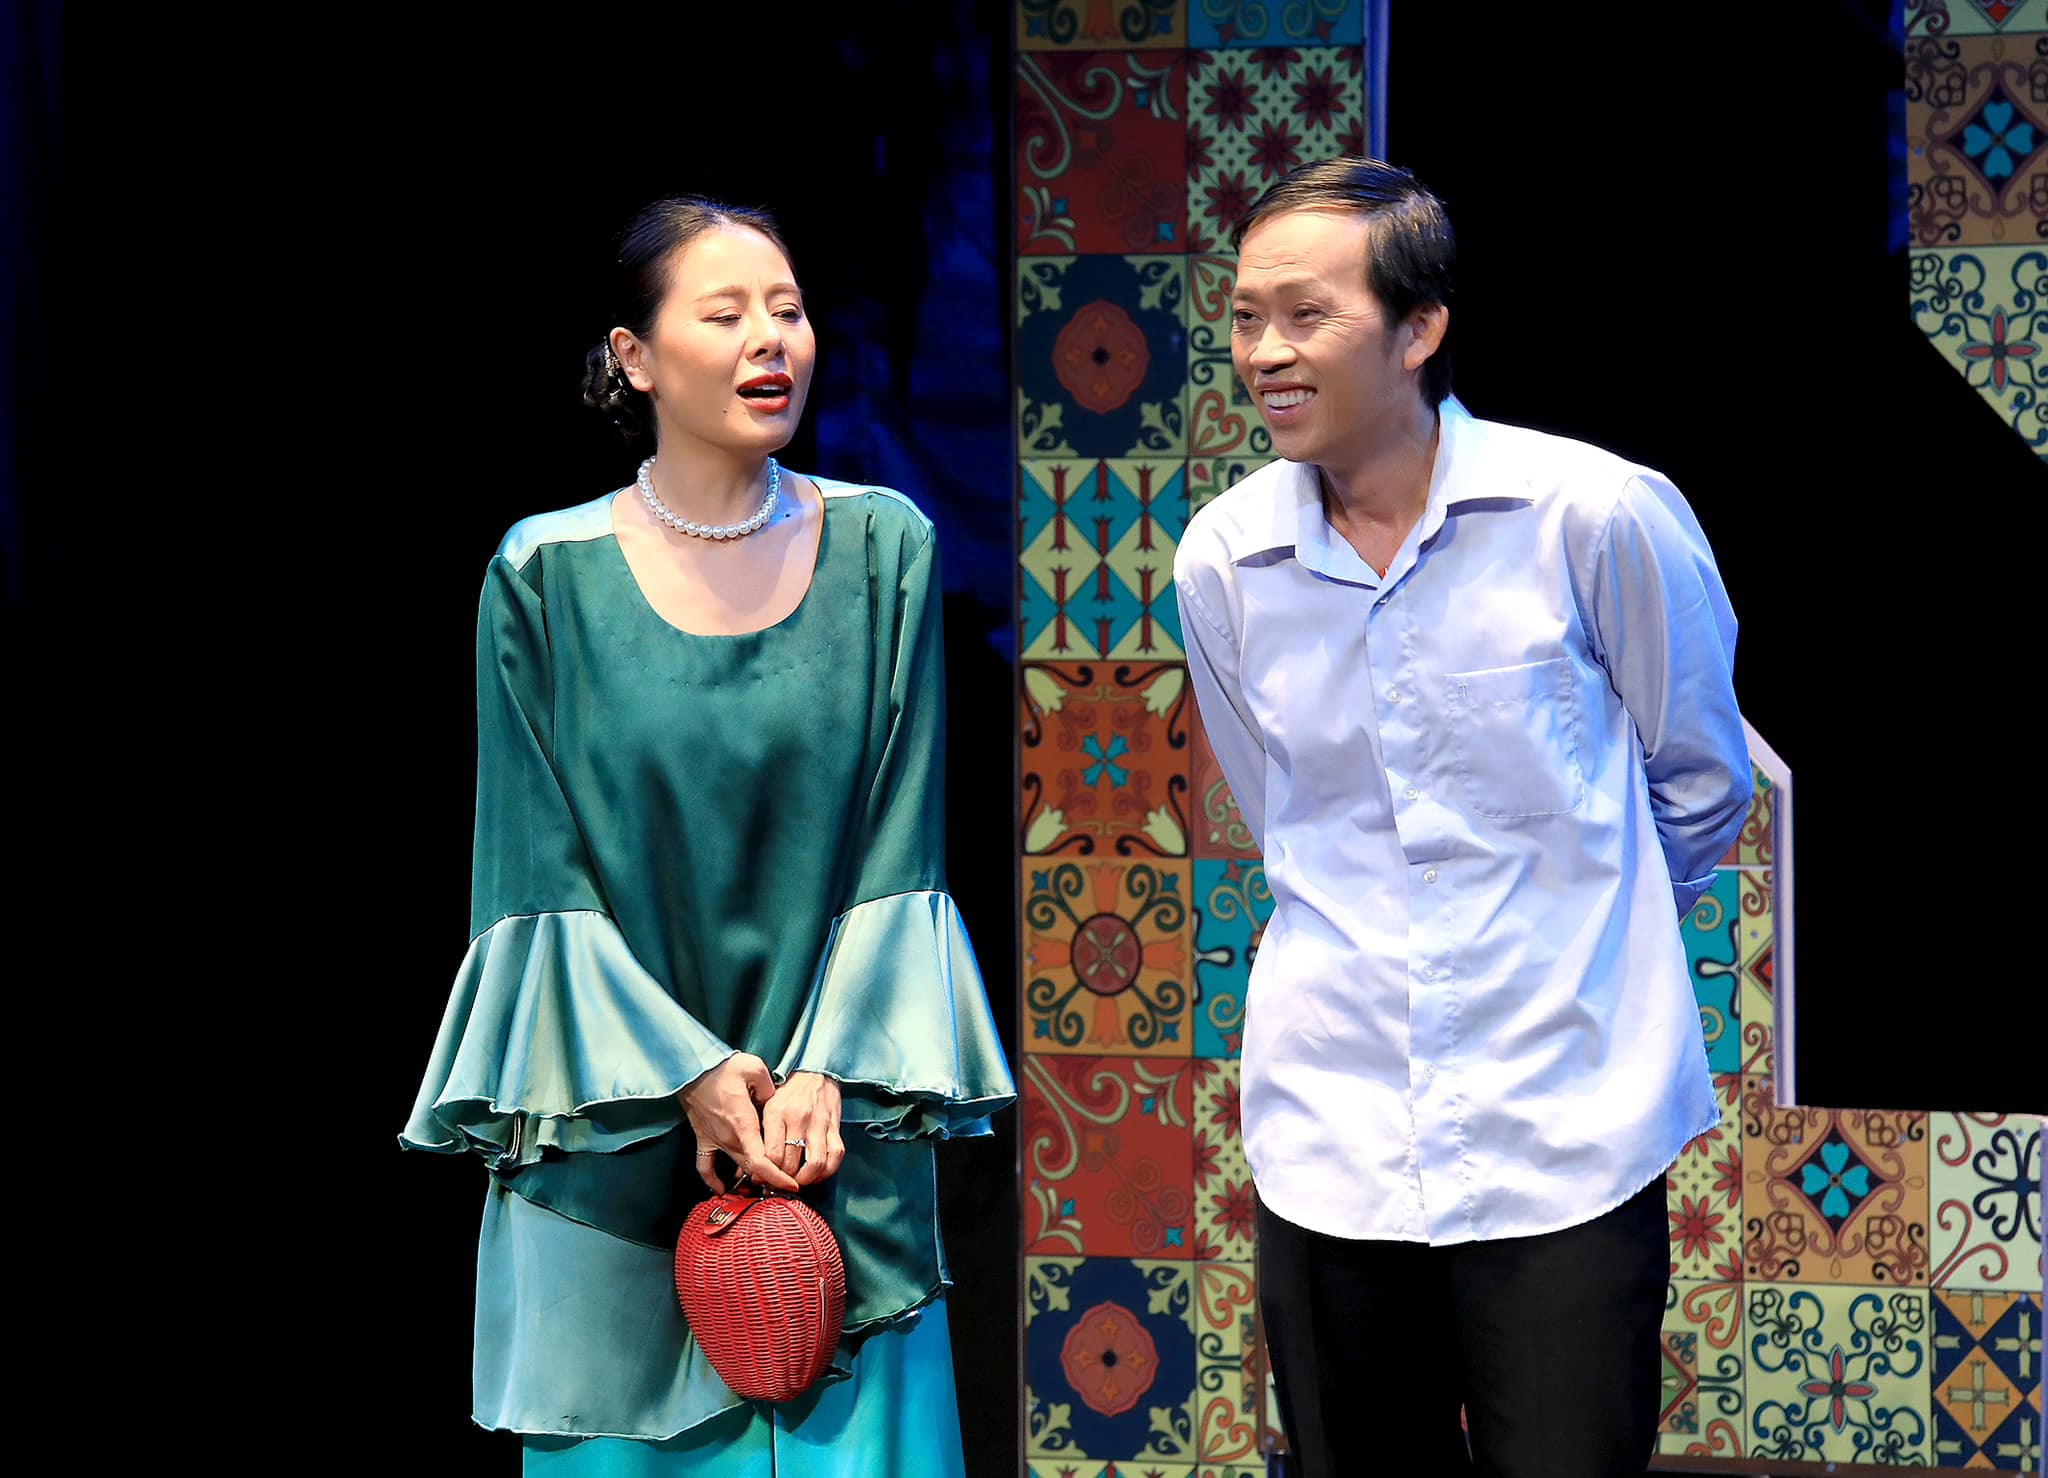 Hoài Linh miệt mài đi diễn sân khấu hội chợ, phản ứng của khán giả gây bất ngờ - 4